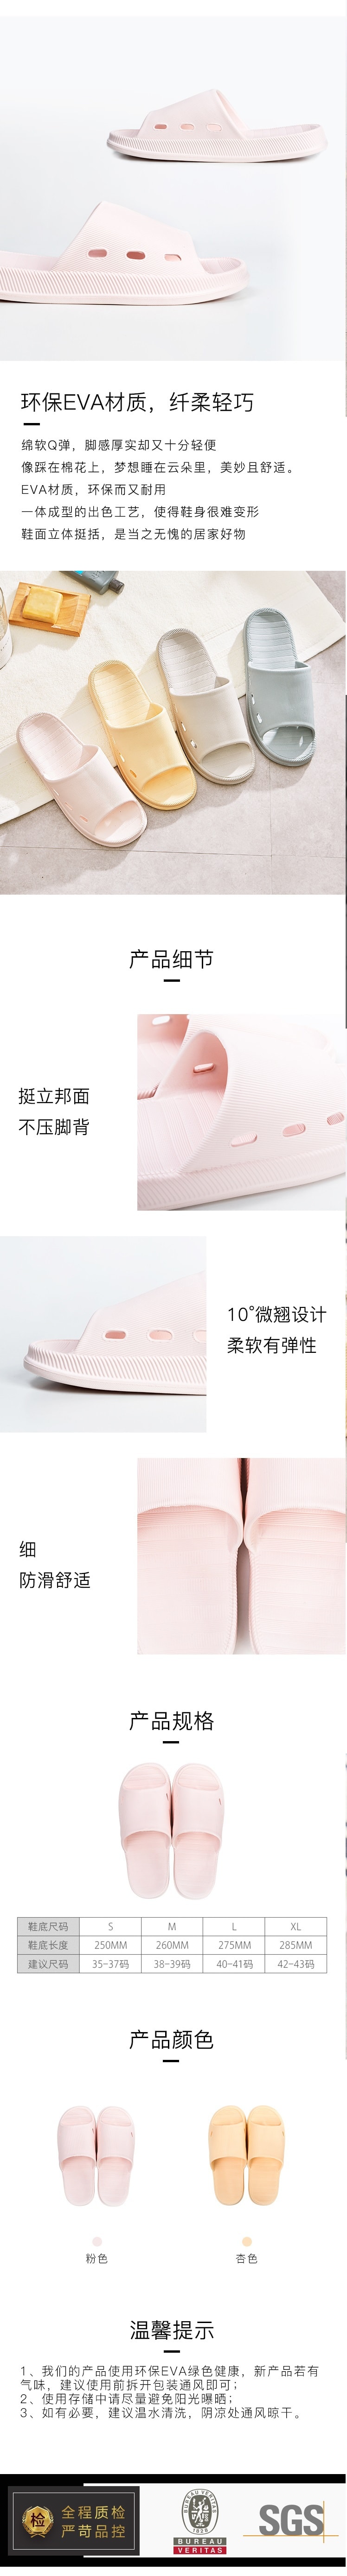 苏宁极物 马卡龙彩色四季防滑拖鞋女款 250MM(适合35-37码) 粉色